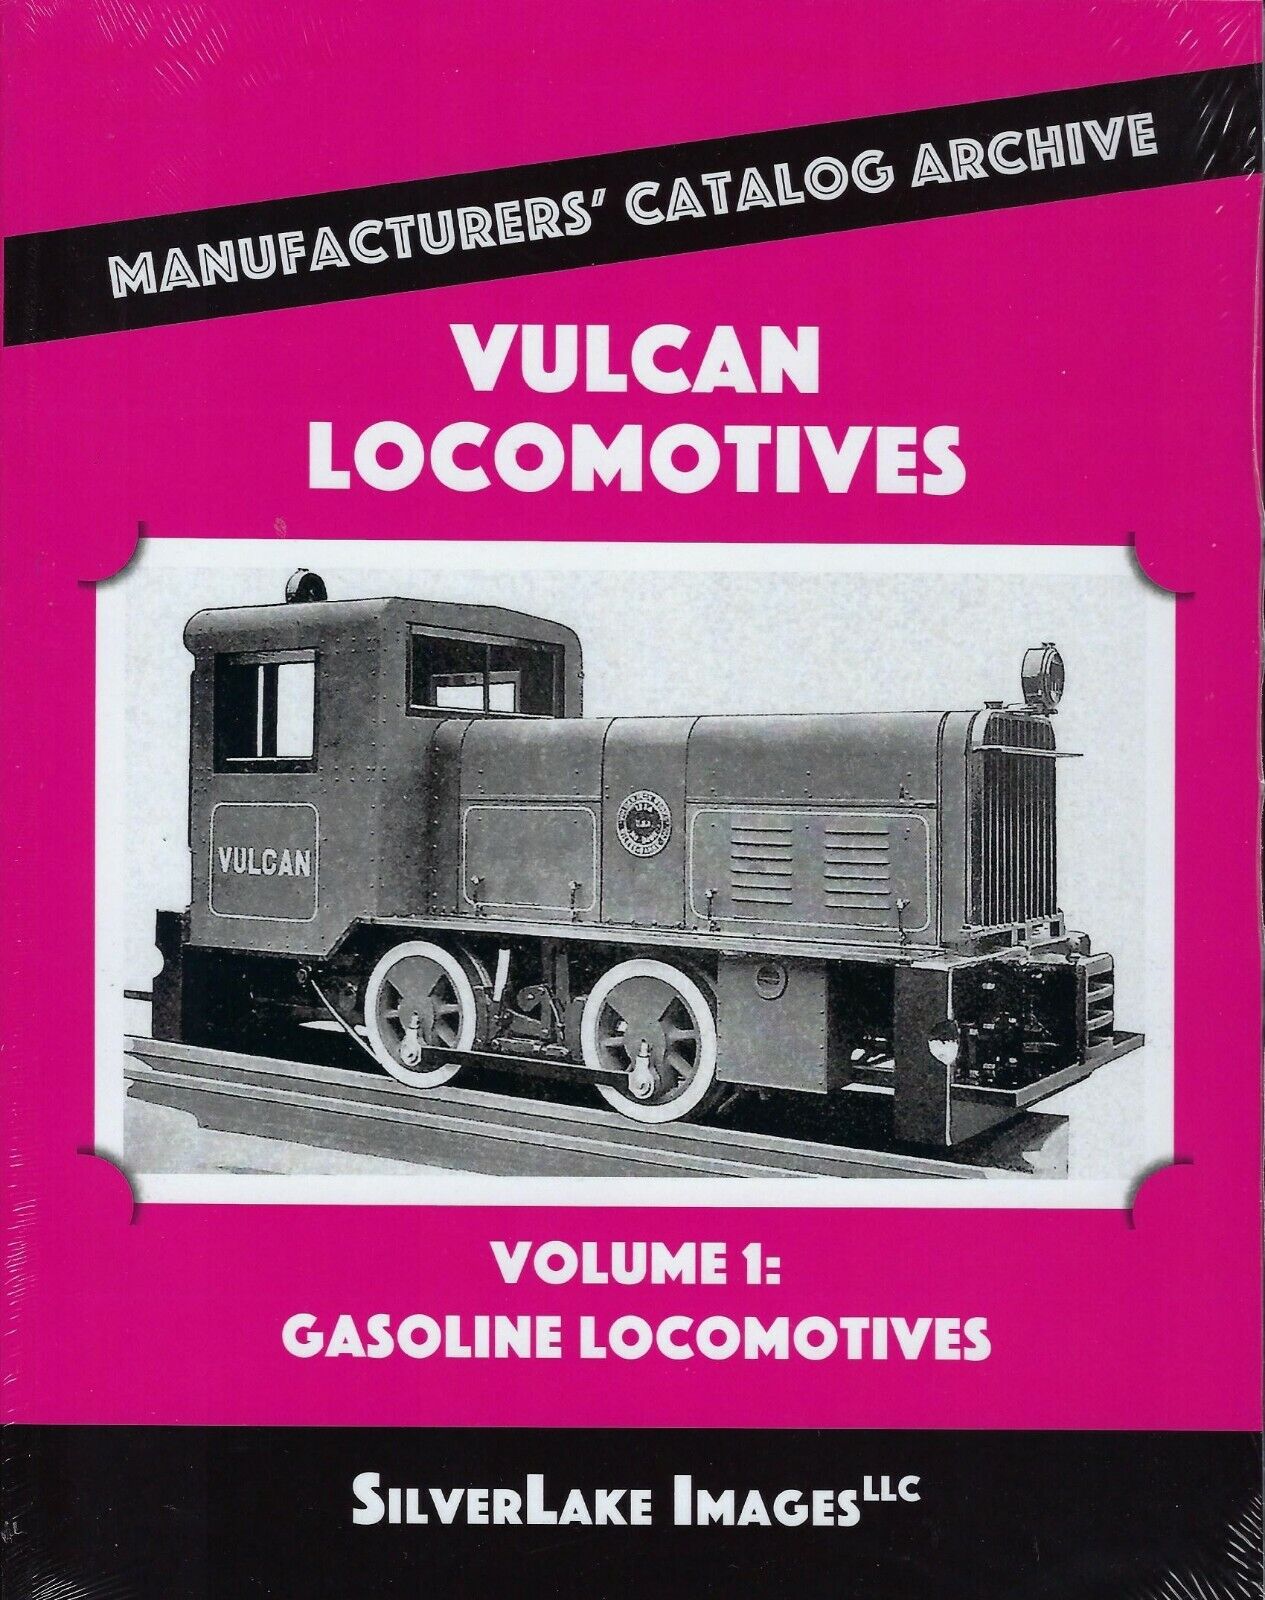 VULCAN LOCOMOTIVES, Vol. 1: Gasoline Locomotives from Mfgs\' Catalog Archive, NEW